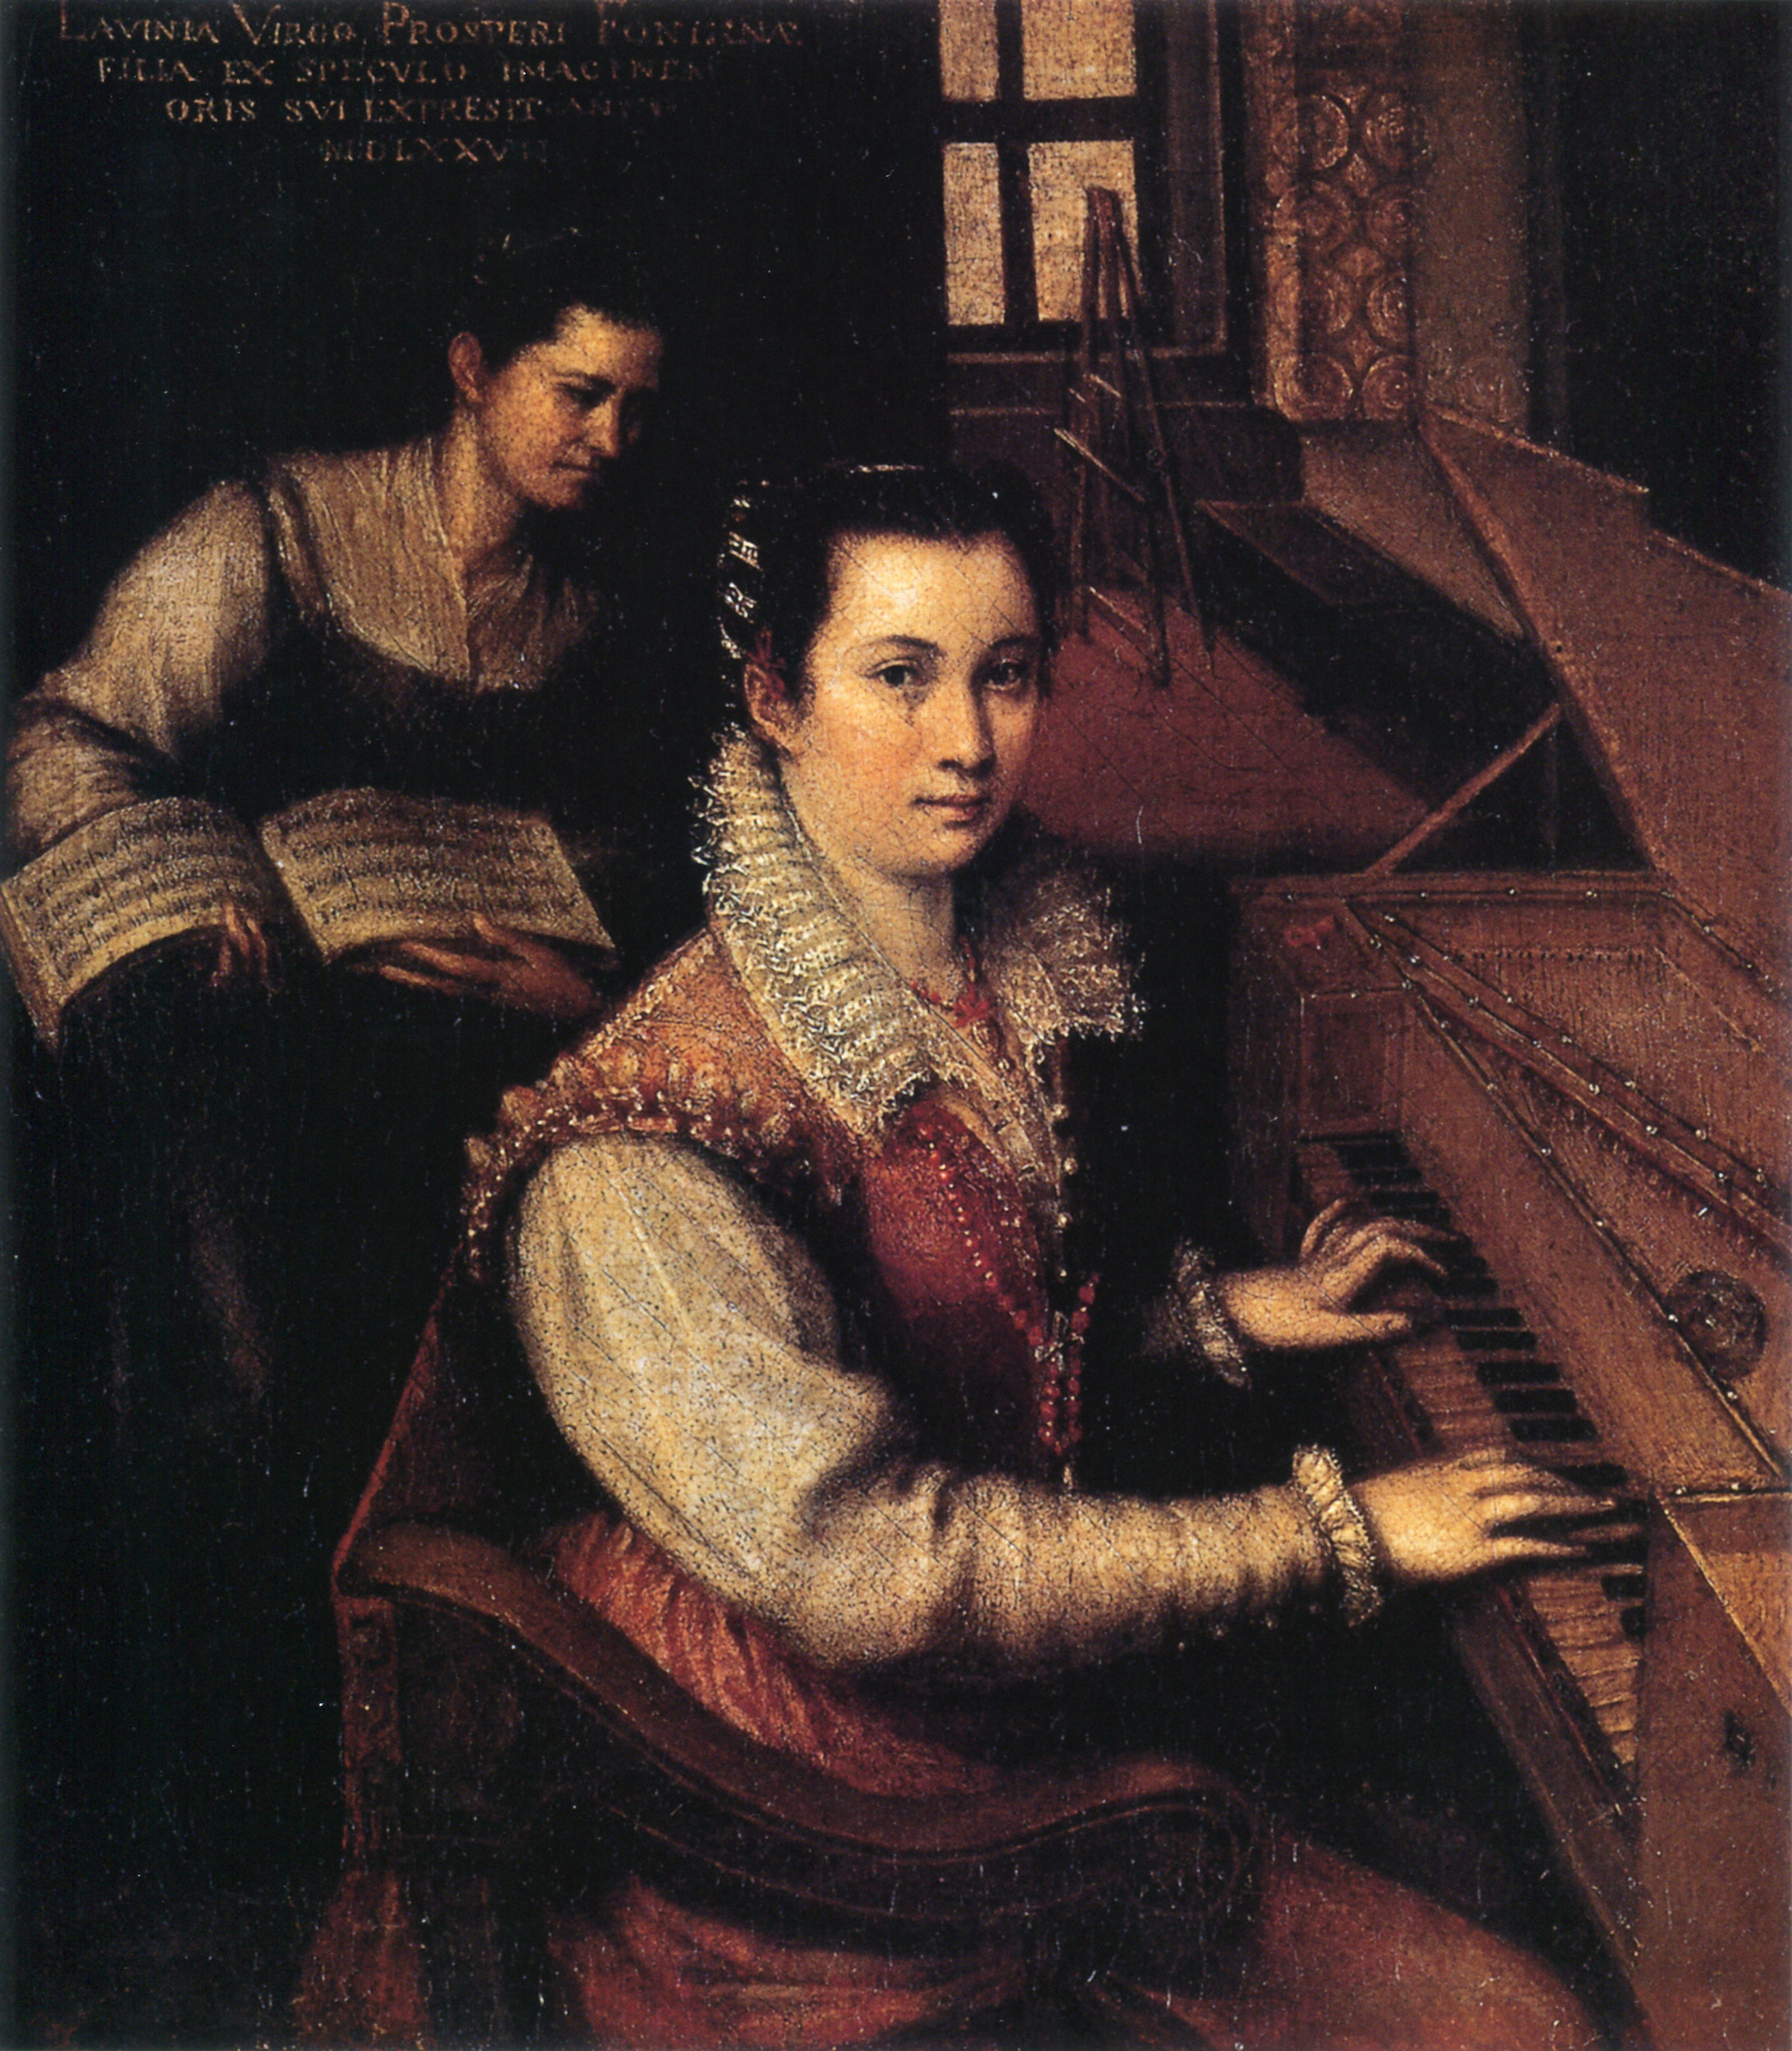 Lavinia Fontana - 24 agosto 1552 - 11 agosto 1614